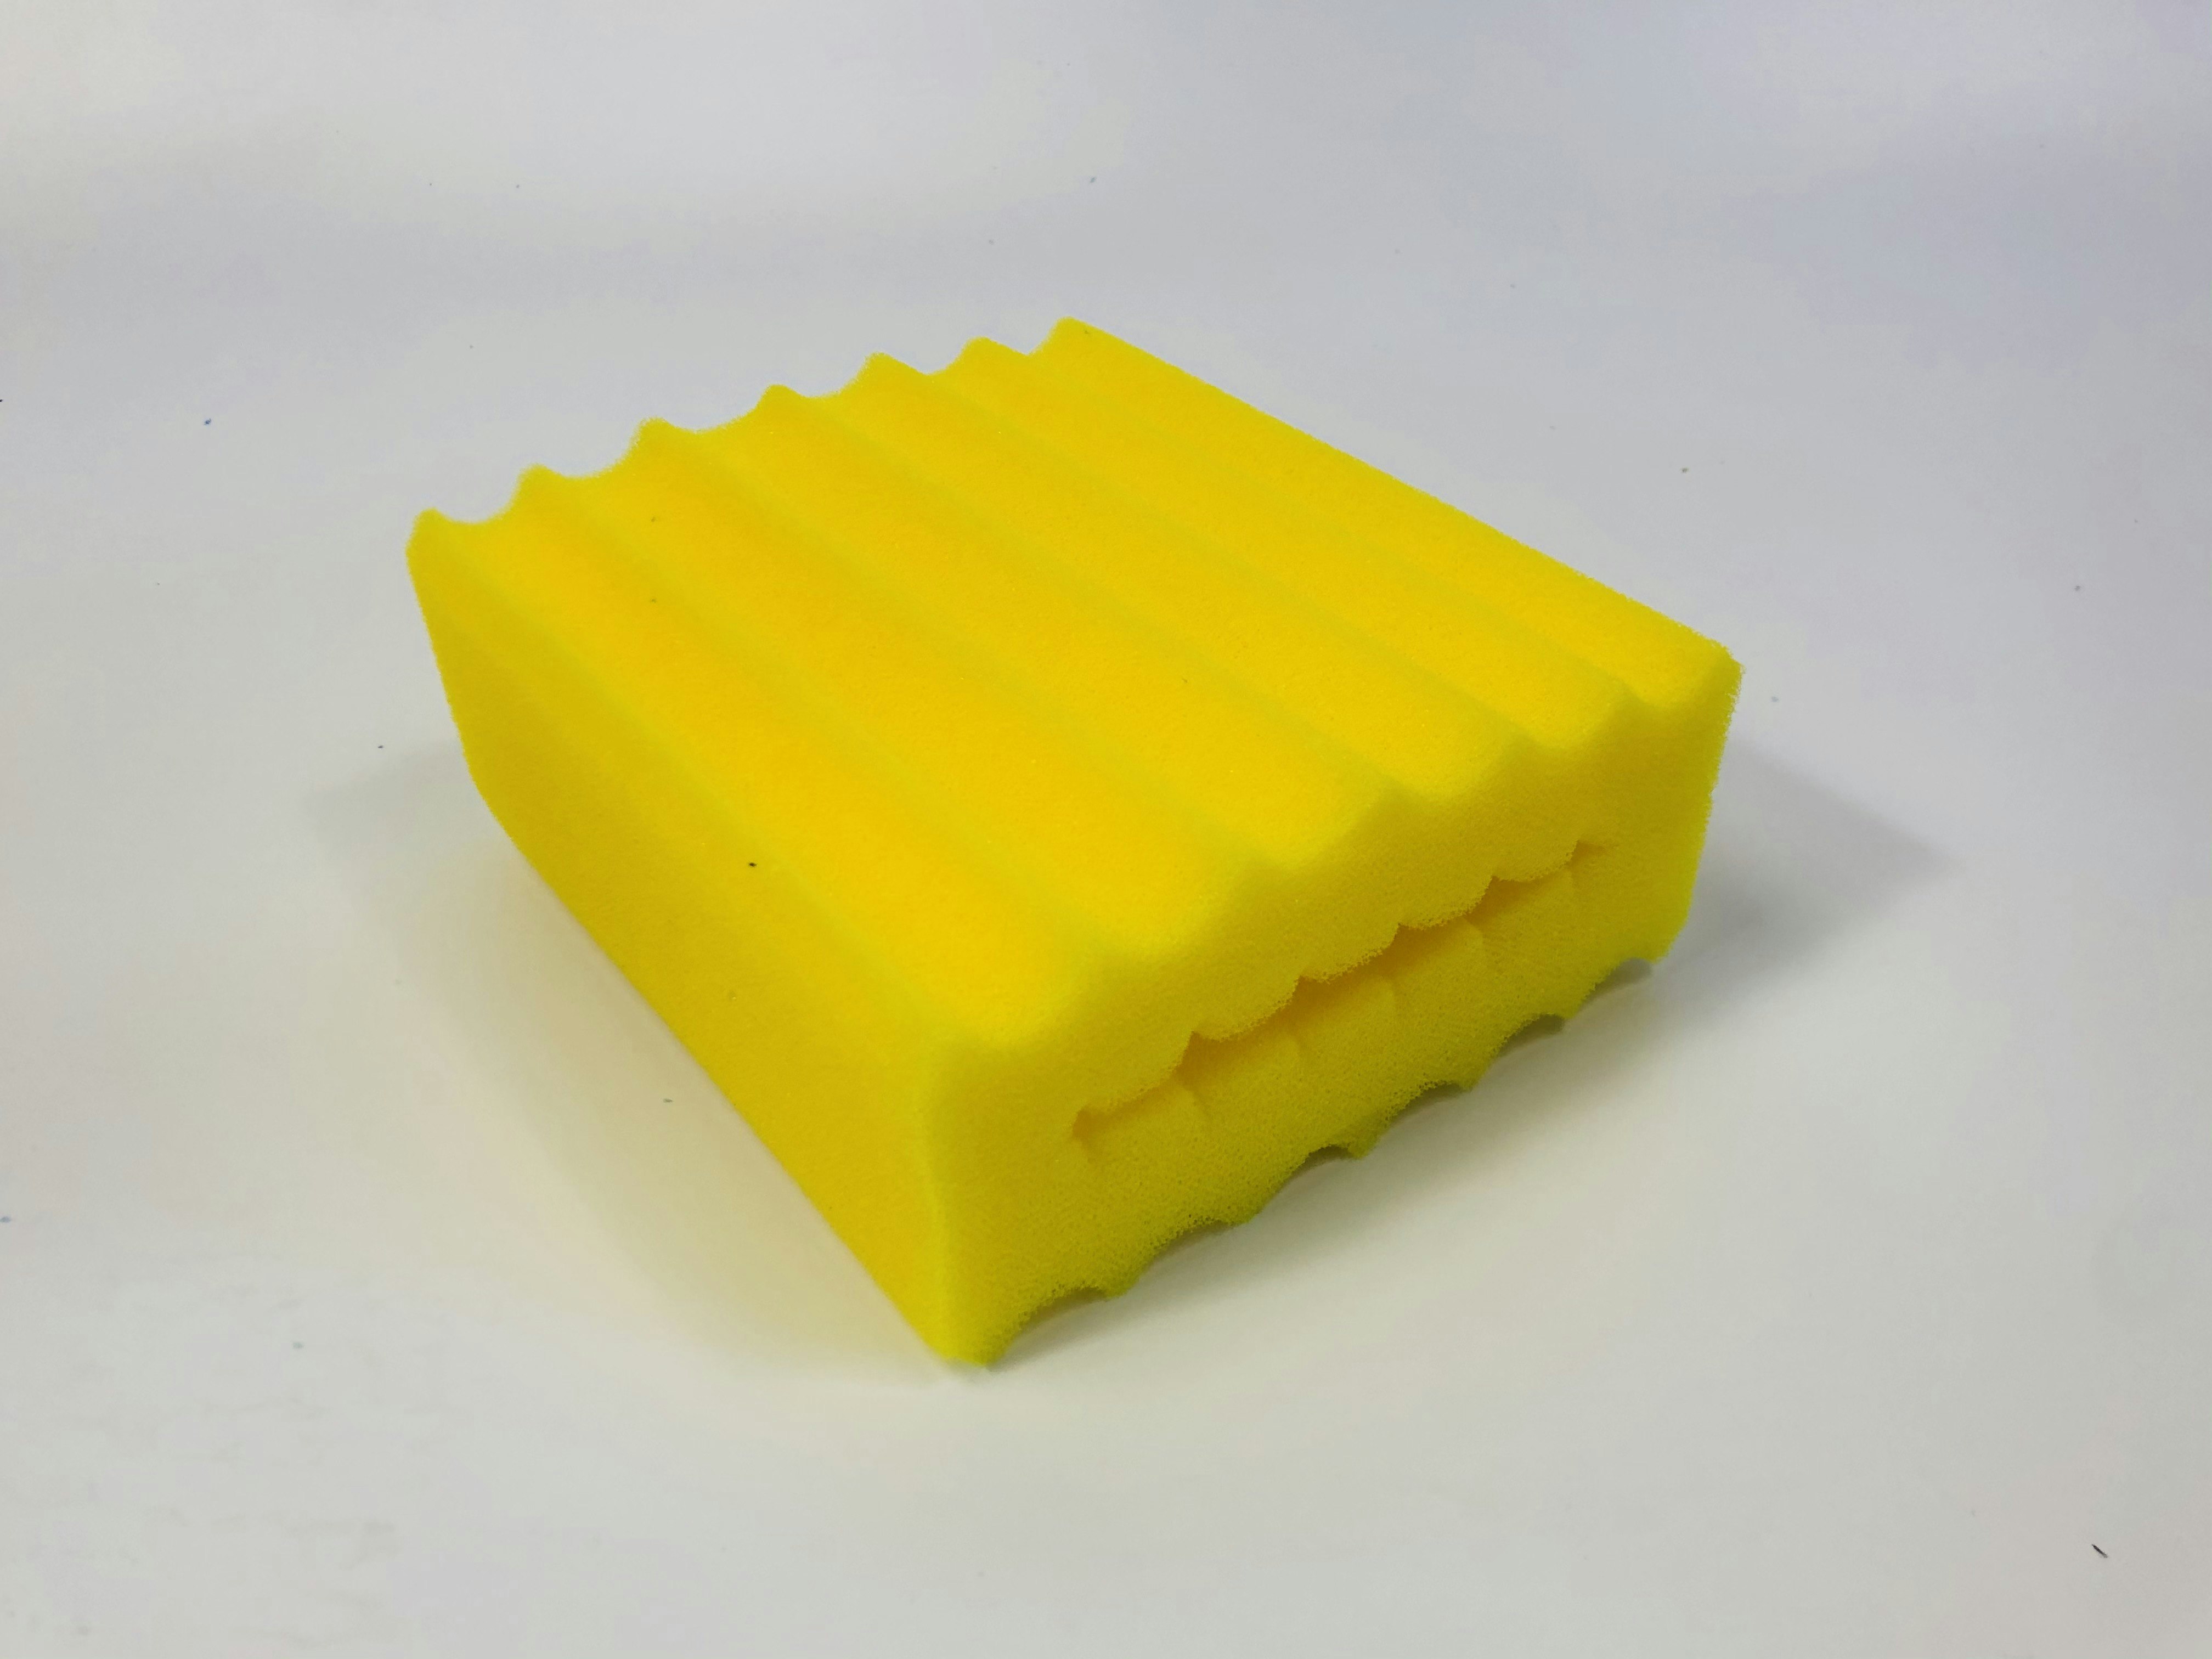 Heissner Filterschwamm für Kartusche, gelb, fein, 30ppi, für FPU10100 / FPU16000 / FPU24000 (ab 2021)